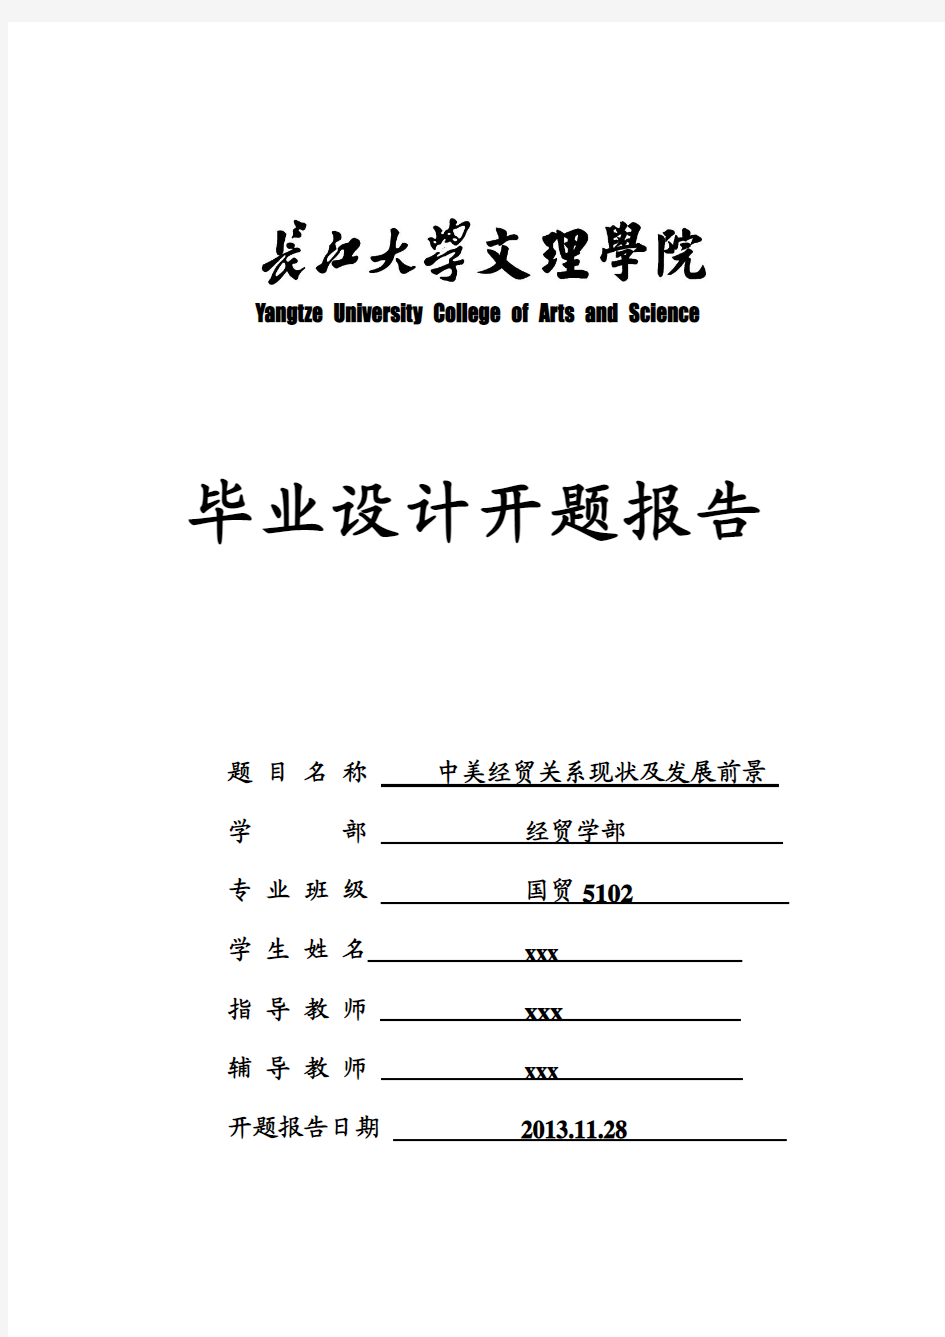 国贸专业,毕业开题报告,长江大学文理学院